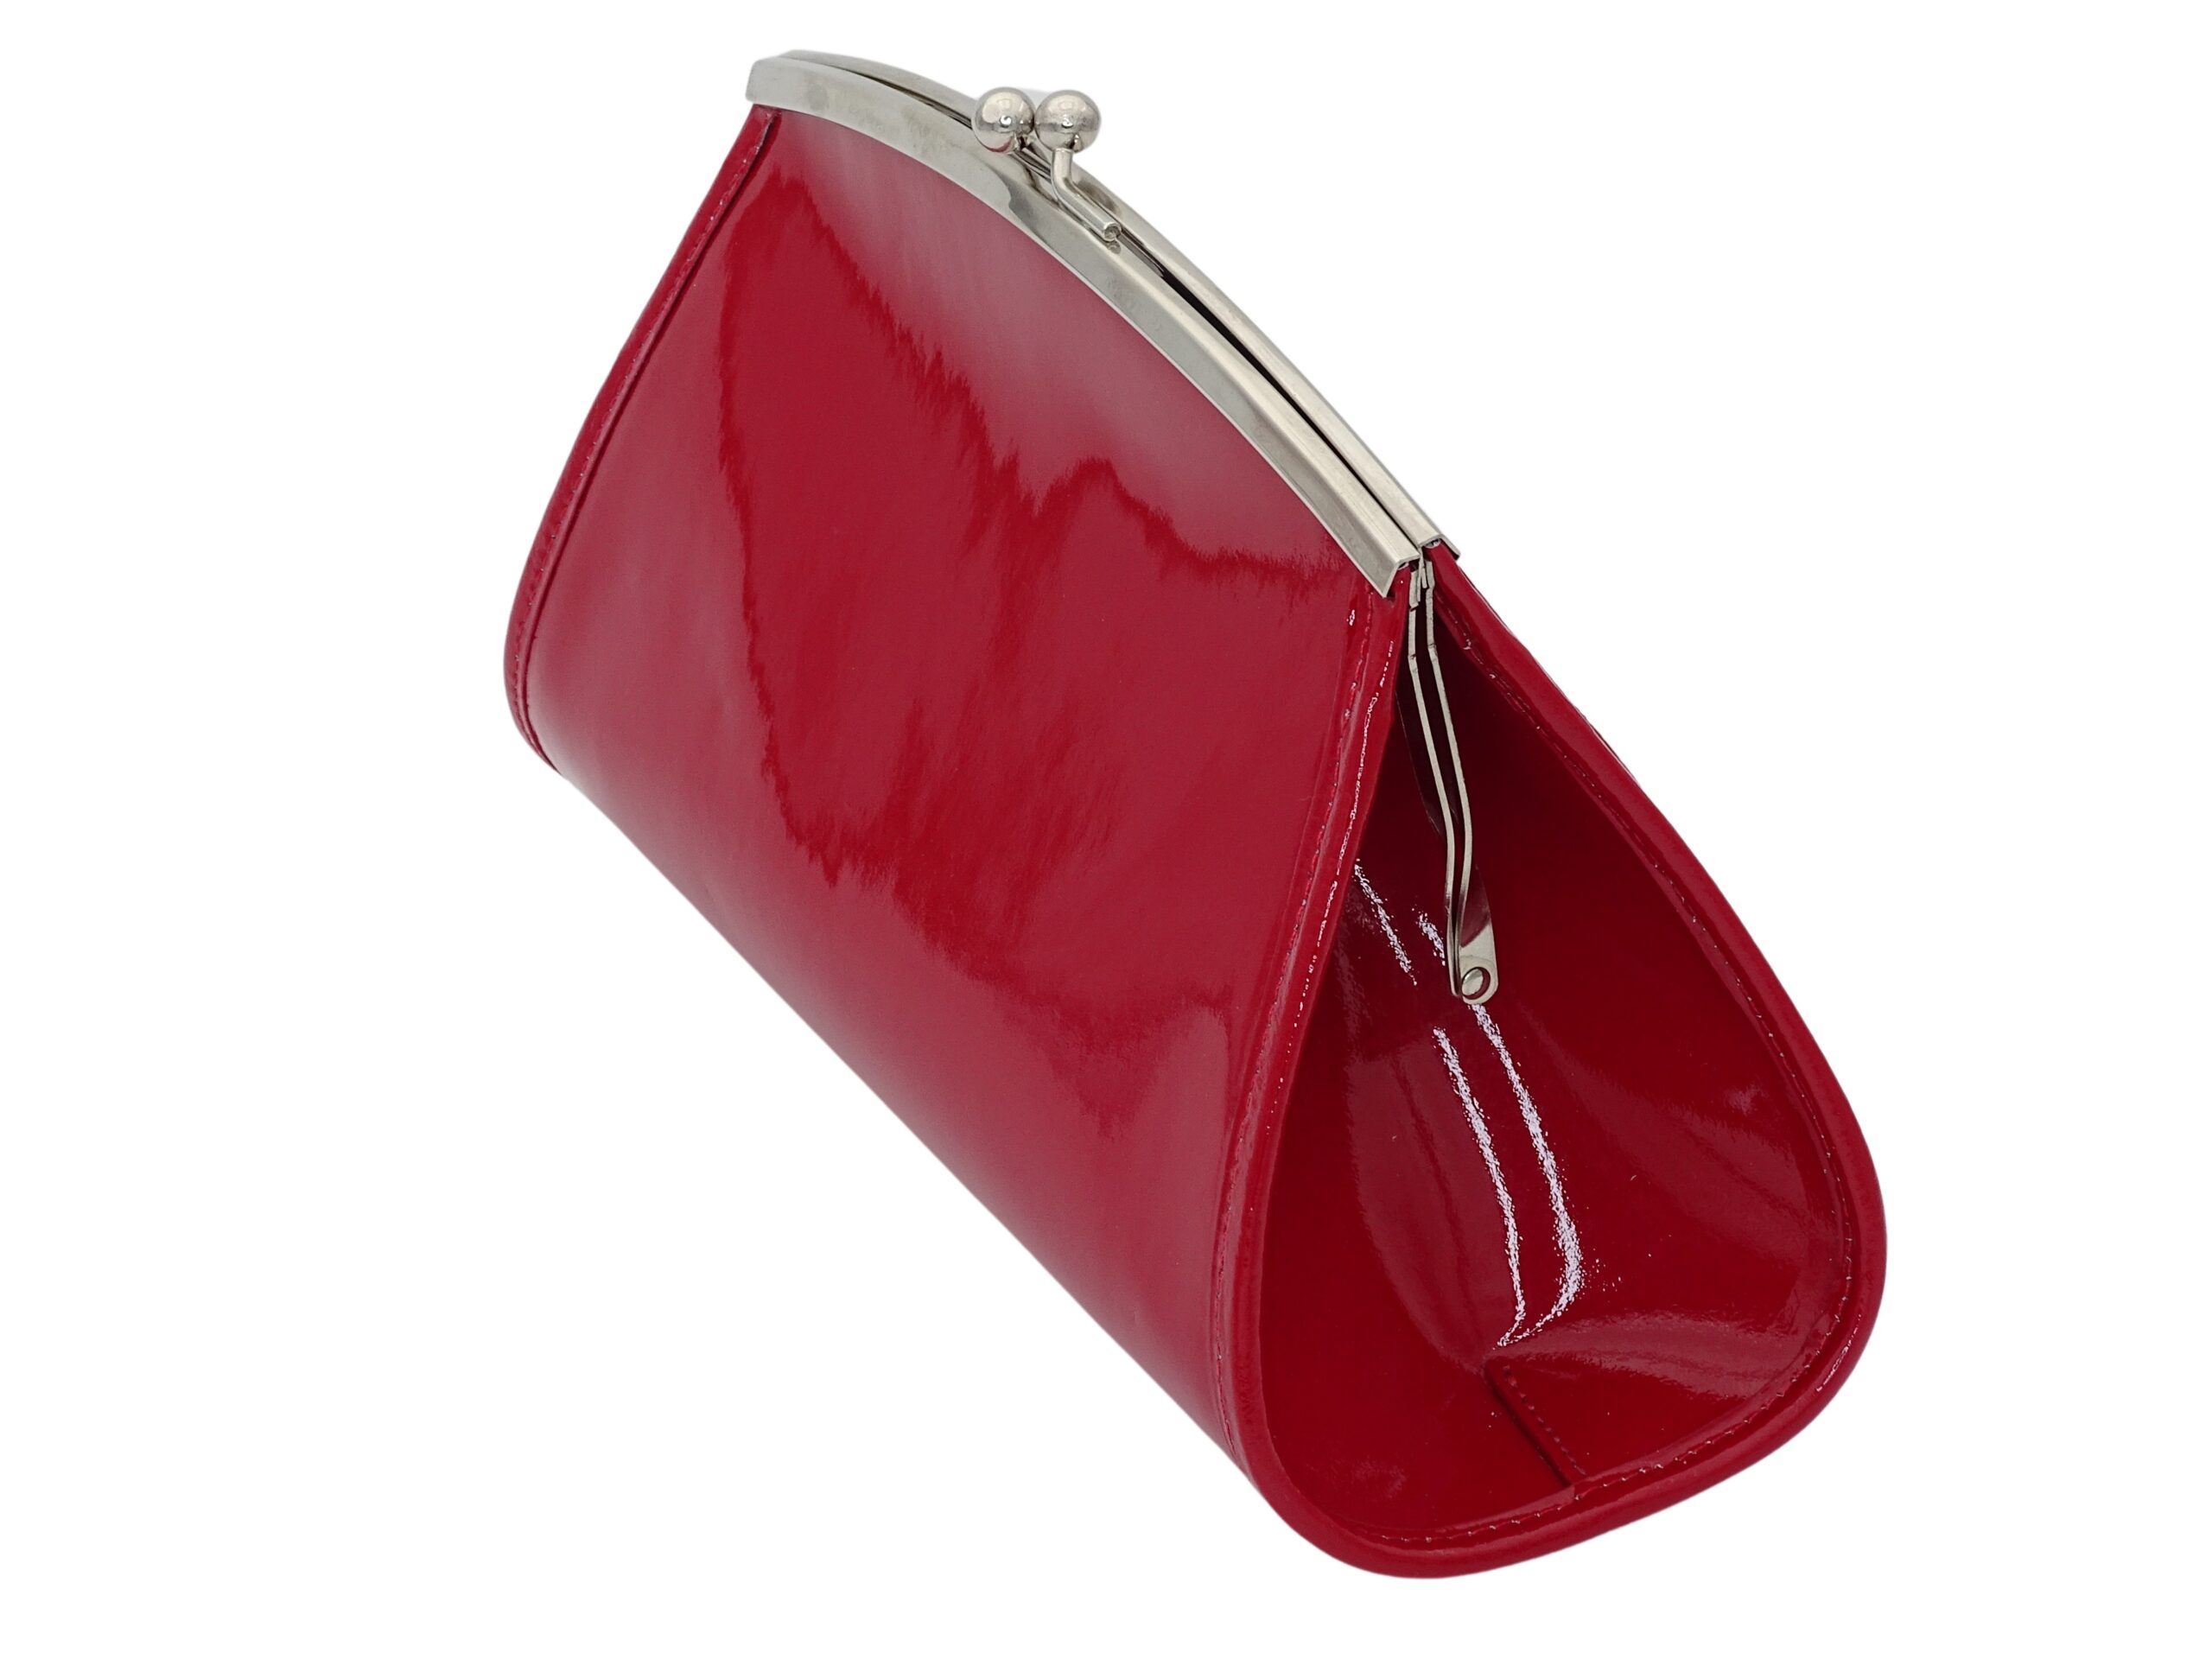 Le sac a main marilyne est de couleur rouge, rouge baiser. ce sac à main est cousu à la main en france. le choix du made in france c'est aussi choisir un sac à main réalisé avec un joli cuir de couleur rouge verni